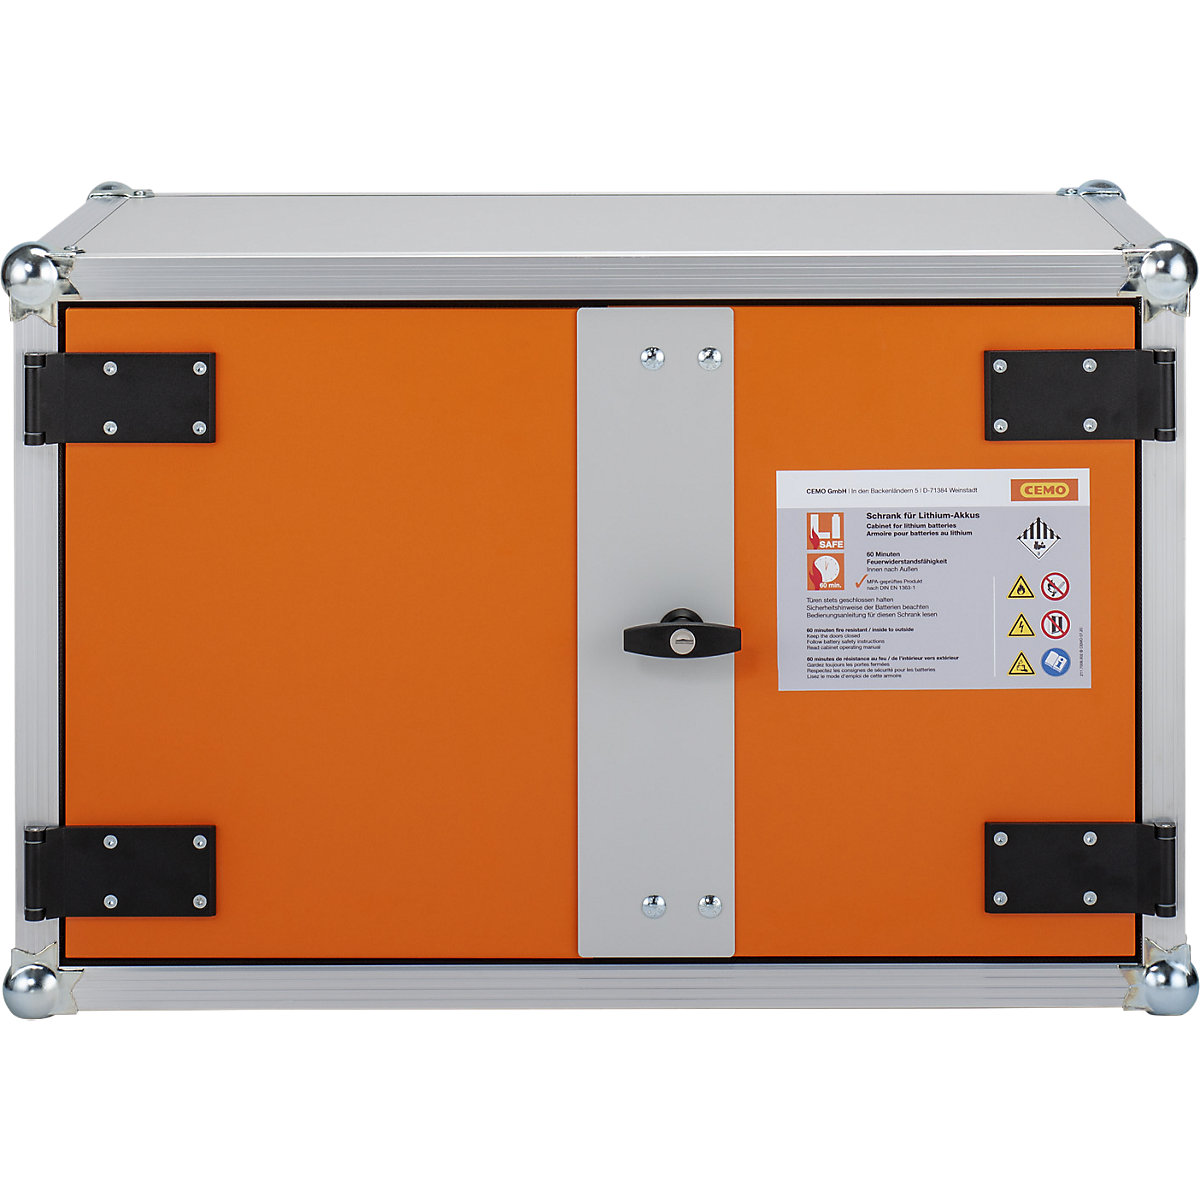 Varnostna omara za skladiščenje akumulatorjev, možnost priklopa požarnega alarma – CEMO